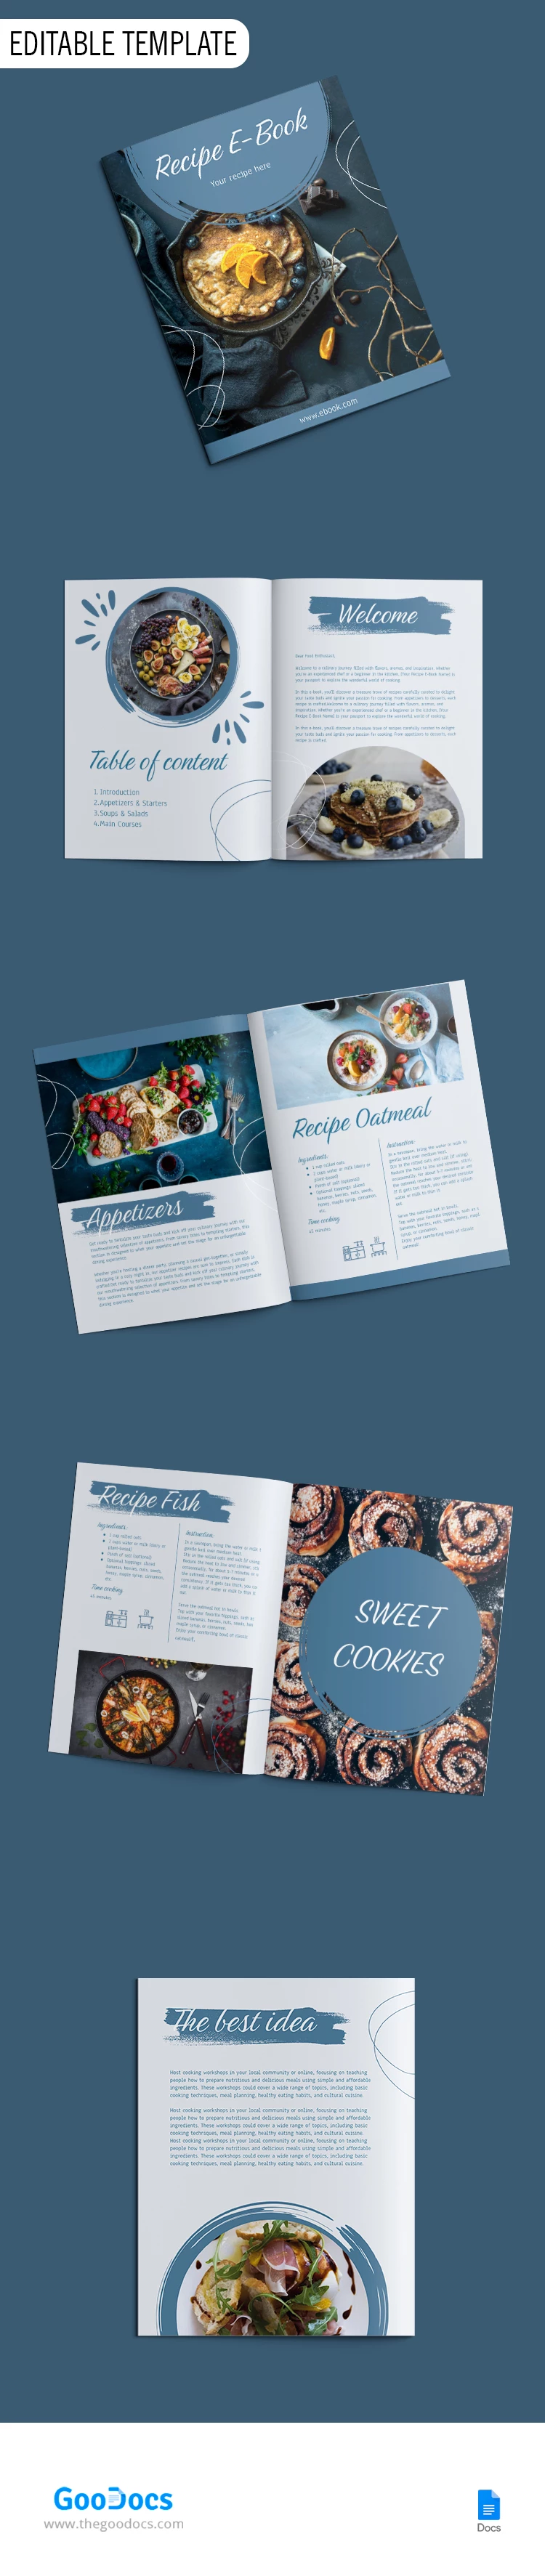 Libro de Cocina Azul - free Google Docs Template - 10068592